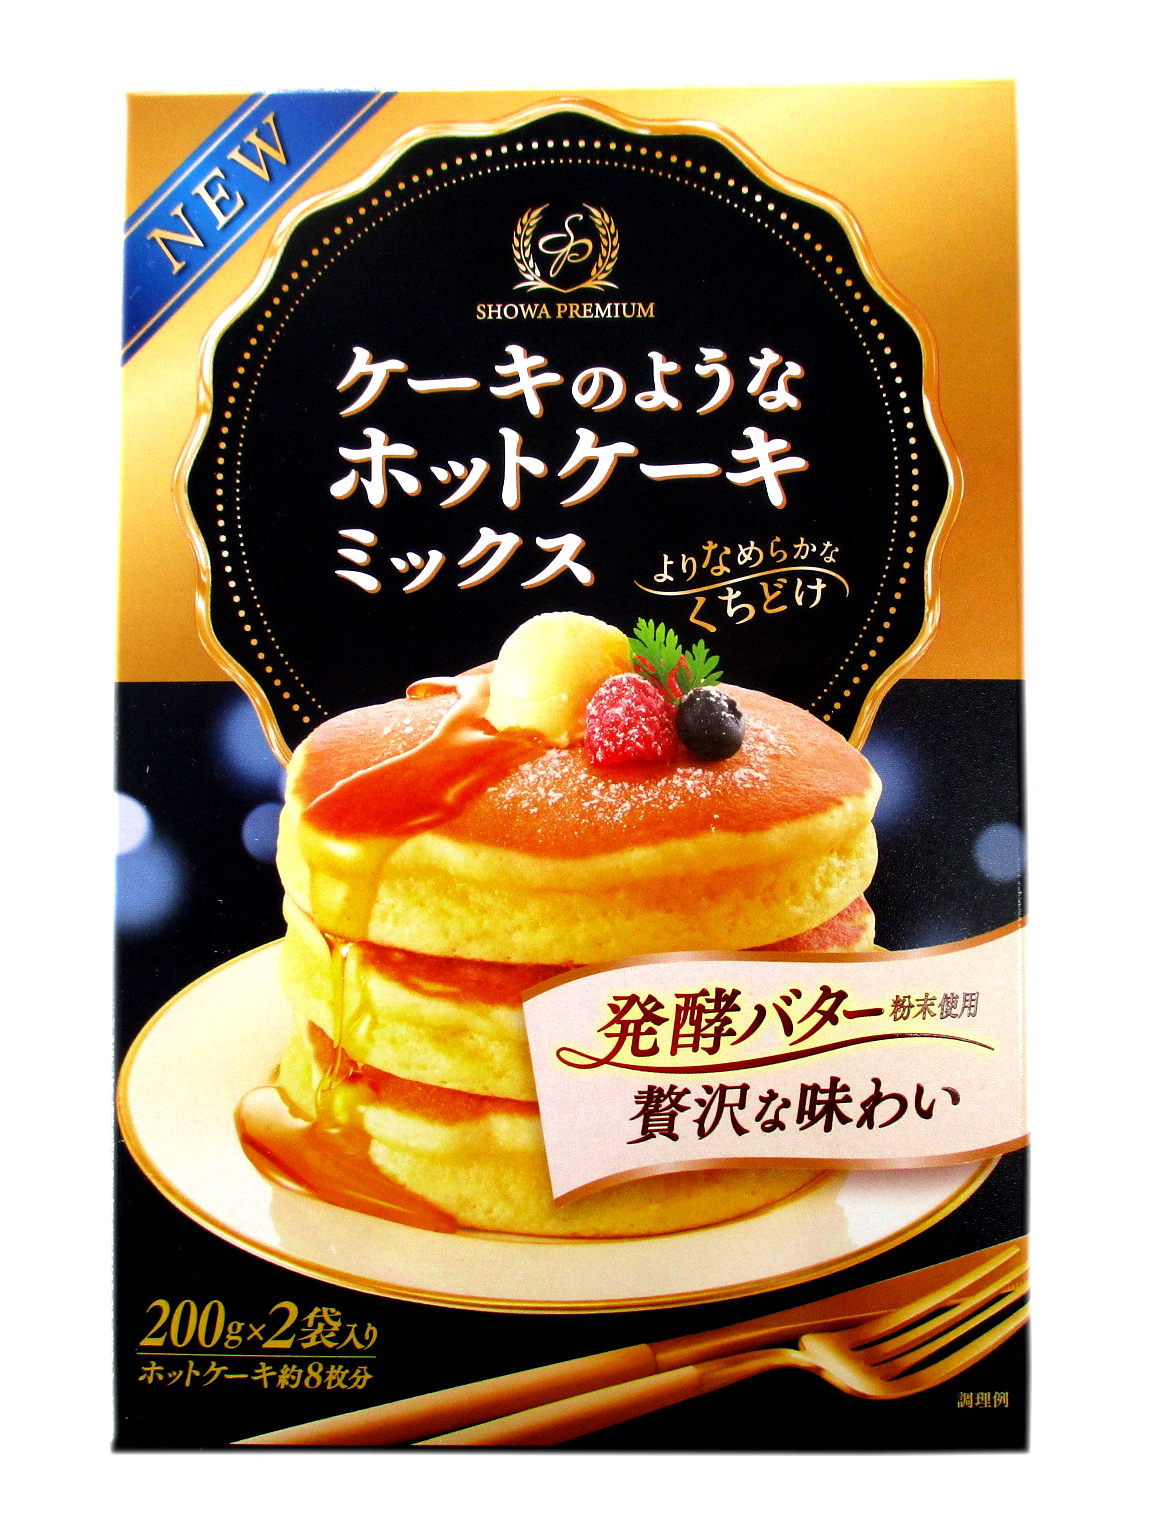 「ル パティシエ タカギ」が作る新しいホットケーキの提案です。 昭和 ケーキのようなホットケーキミックス 400g (200g×2)